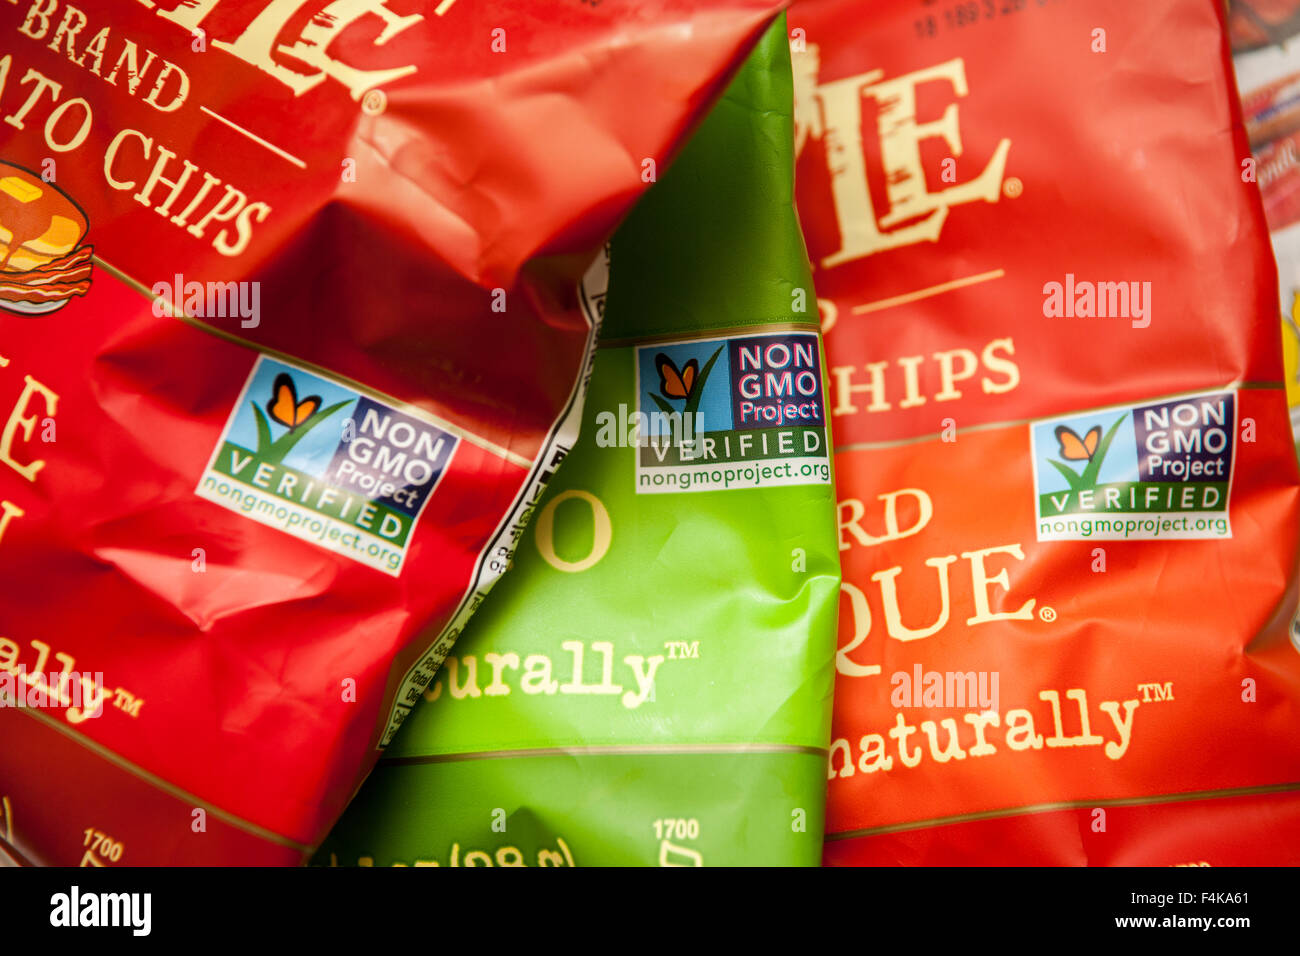 Wasserkocher Marke Kartoffelchips zeigen stolz ihre "Non-GMO Project Verified" Kennzeichnung, in New York am Freitag, 9. Oktober 2015 zu sehen. Kessel ist eine Marke von Diamond Foods. (© Richard B. Levine) Stockfoto